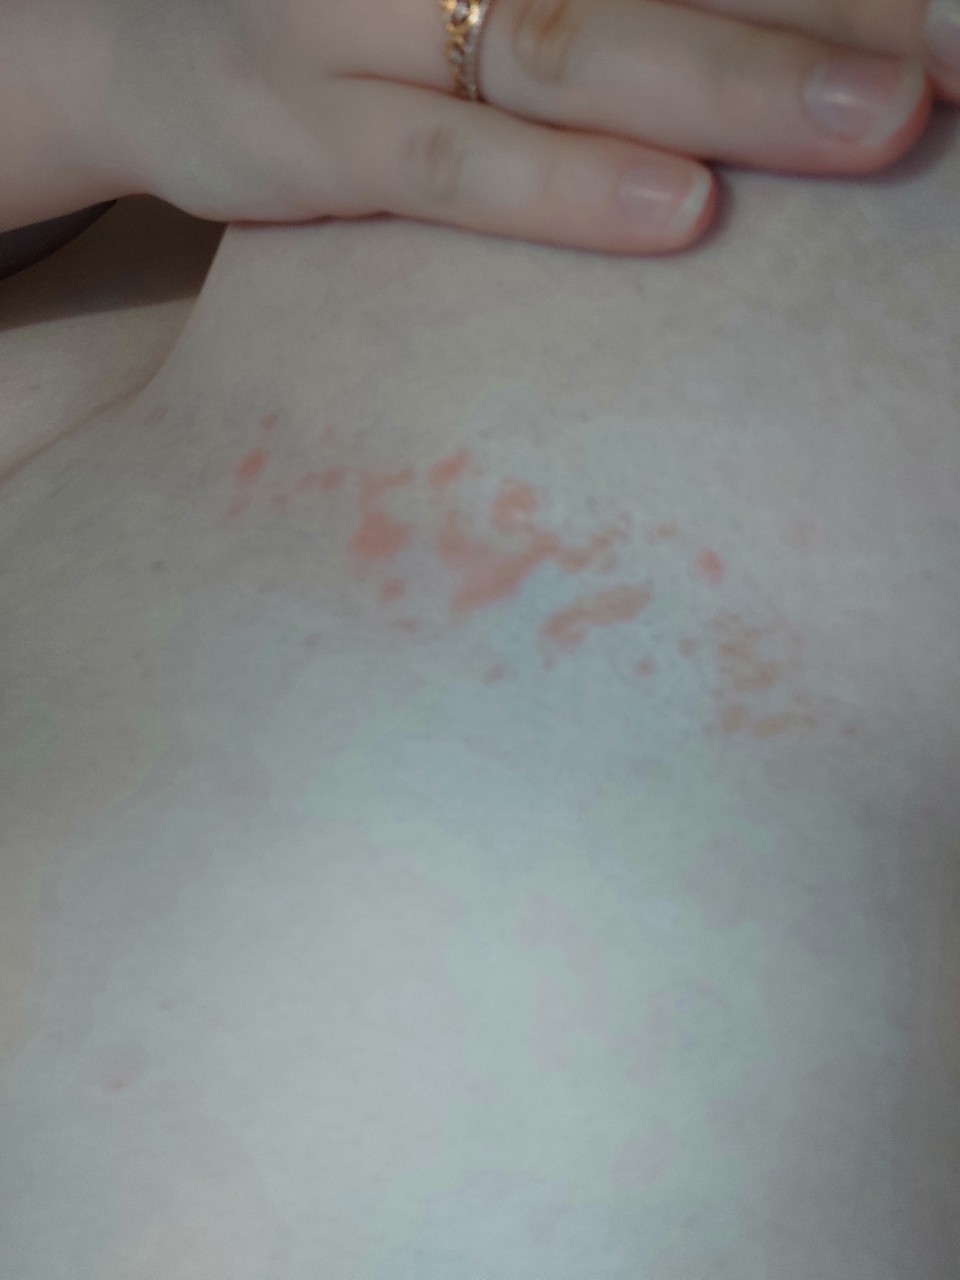 красные точки на груди у женщин фото 71